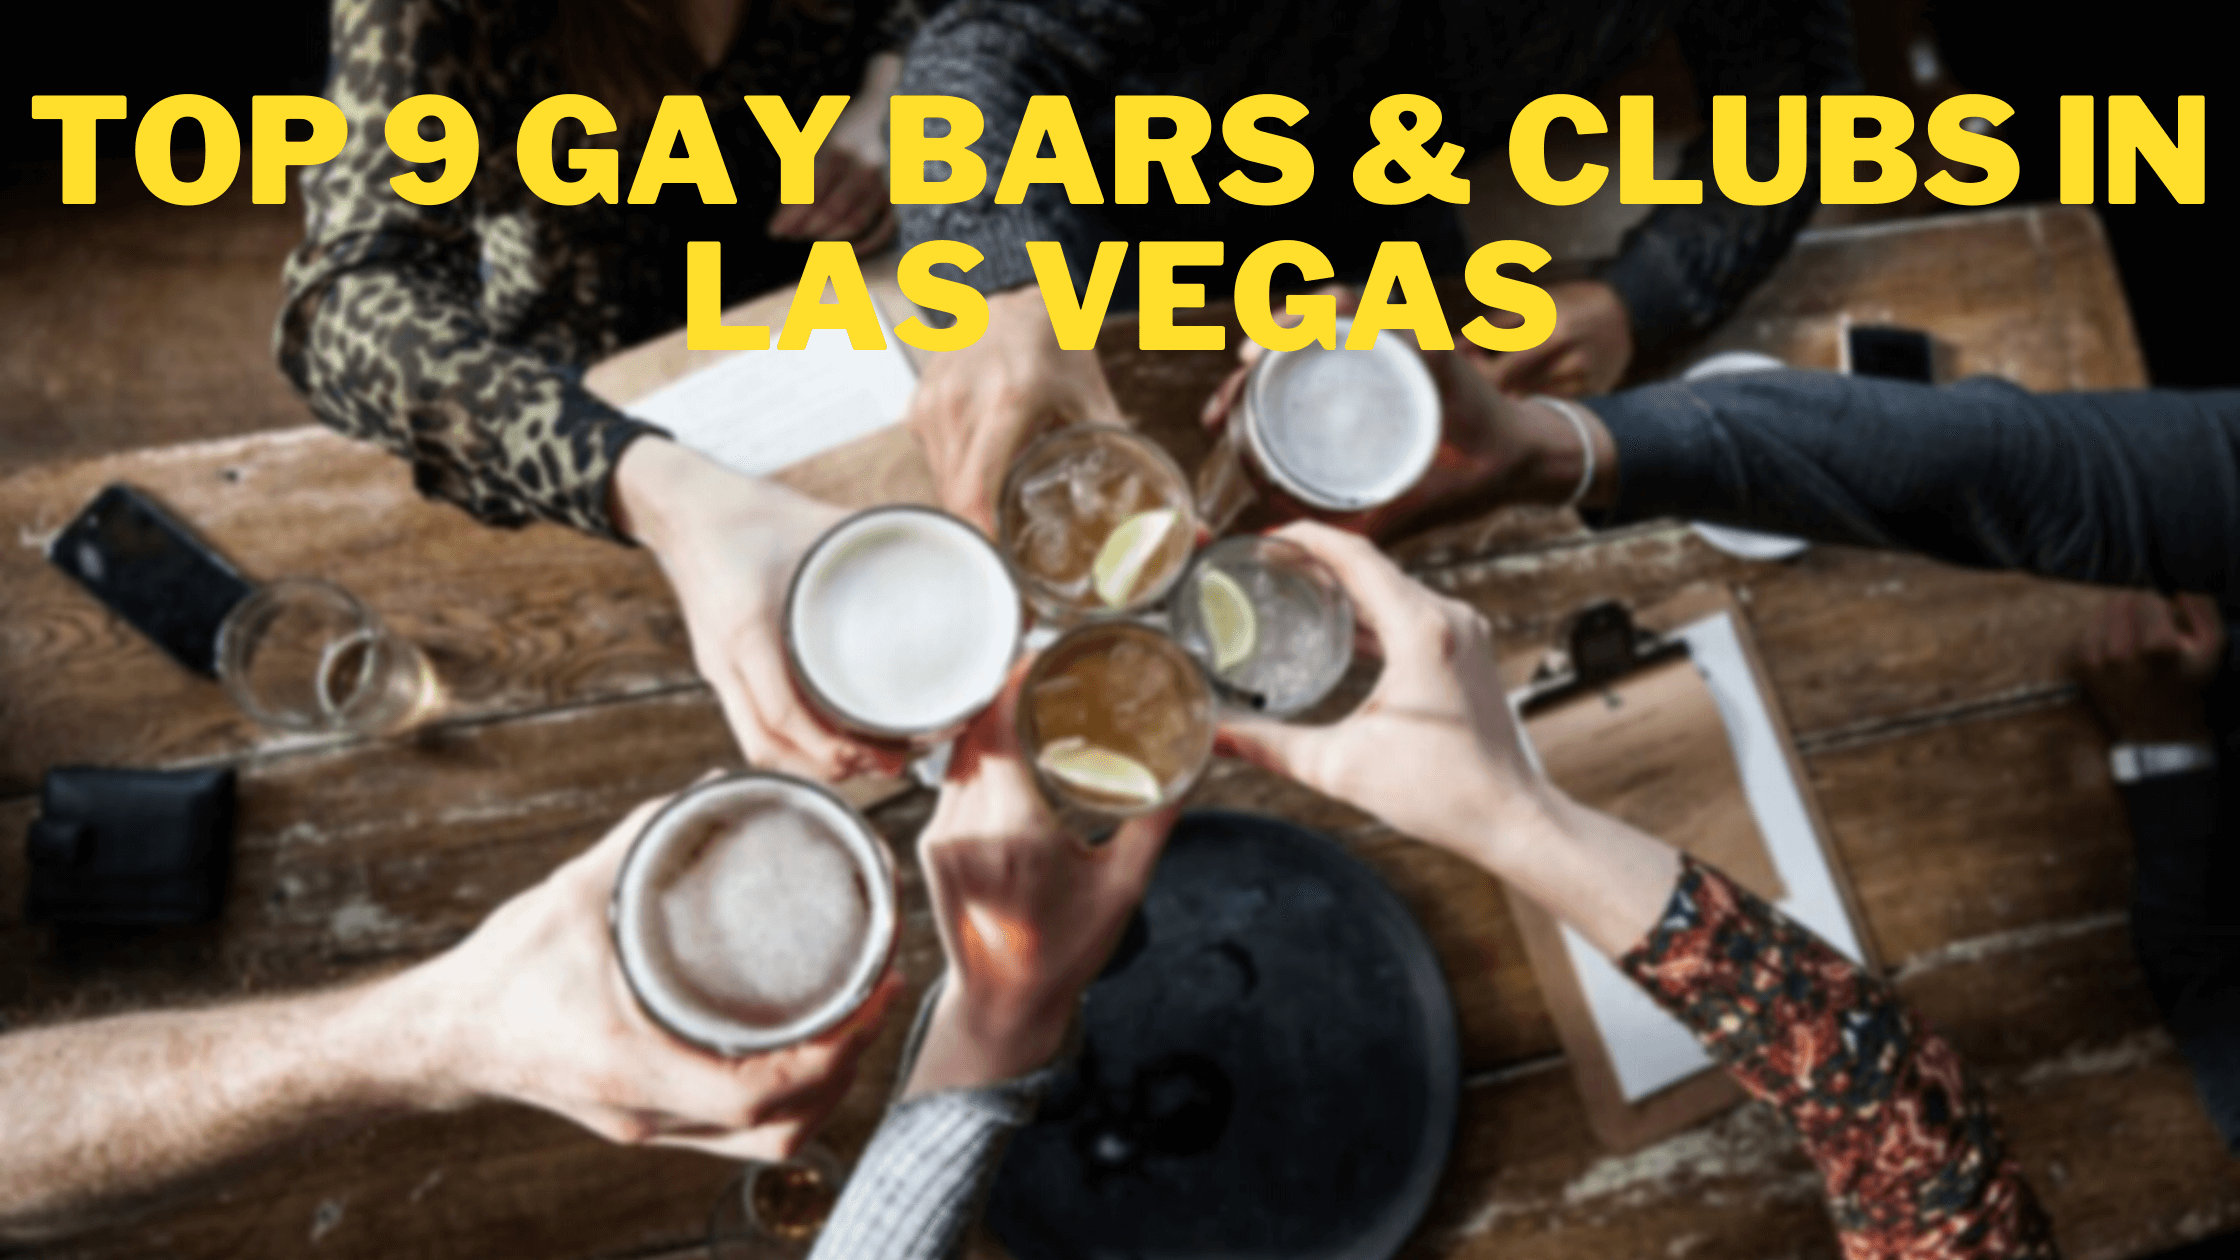 Top 9 Gay Bars & Clubs In Las Vegas